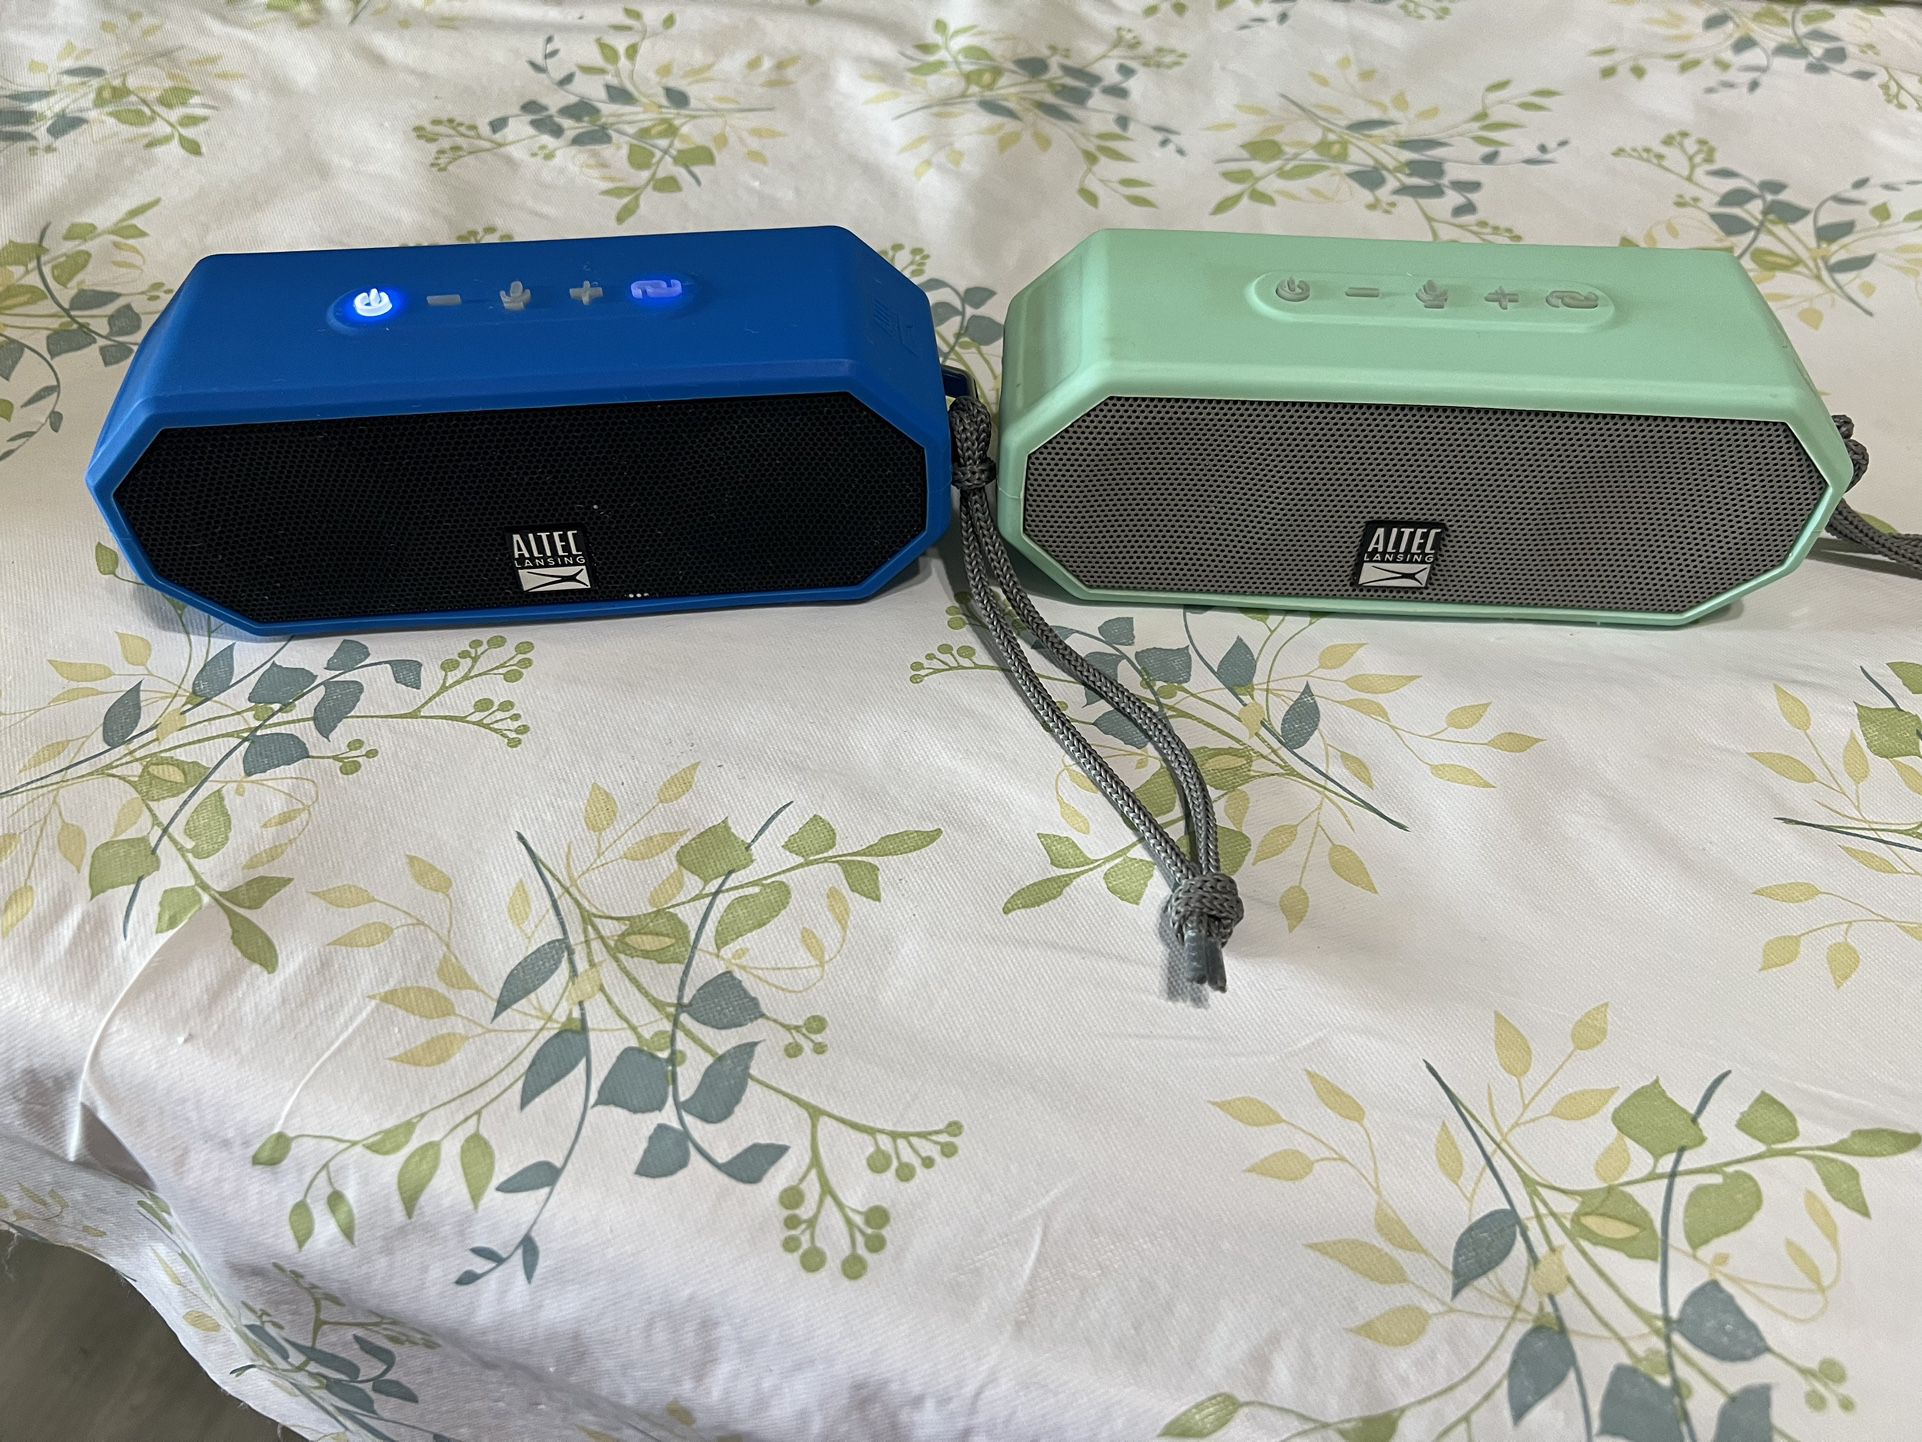 2 Altec Lansing Bluetooth Speakers 